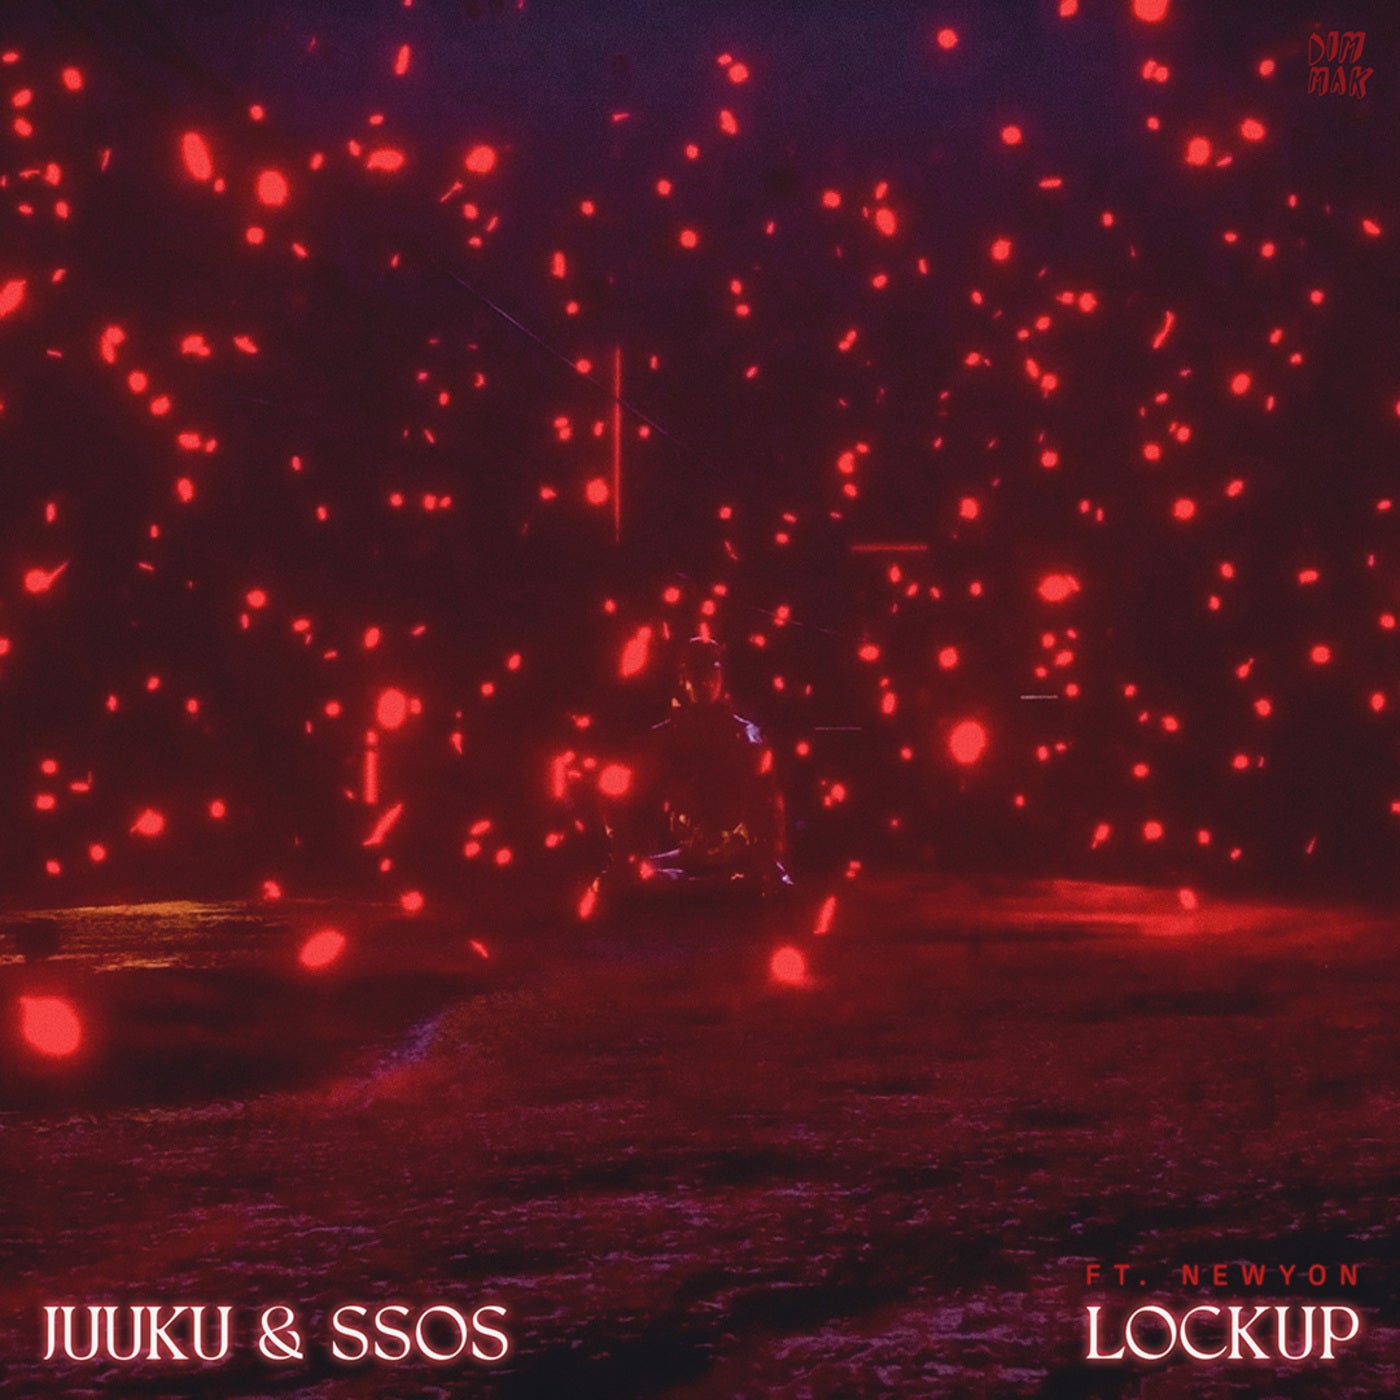 Lockup (feat. NEWYON)